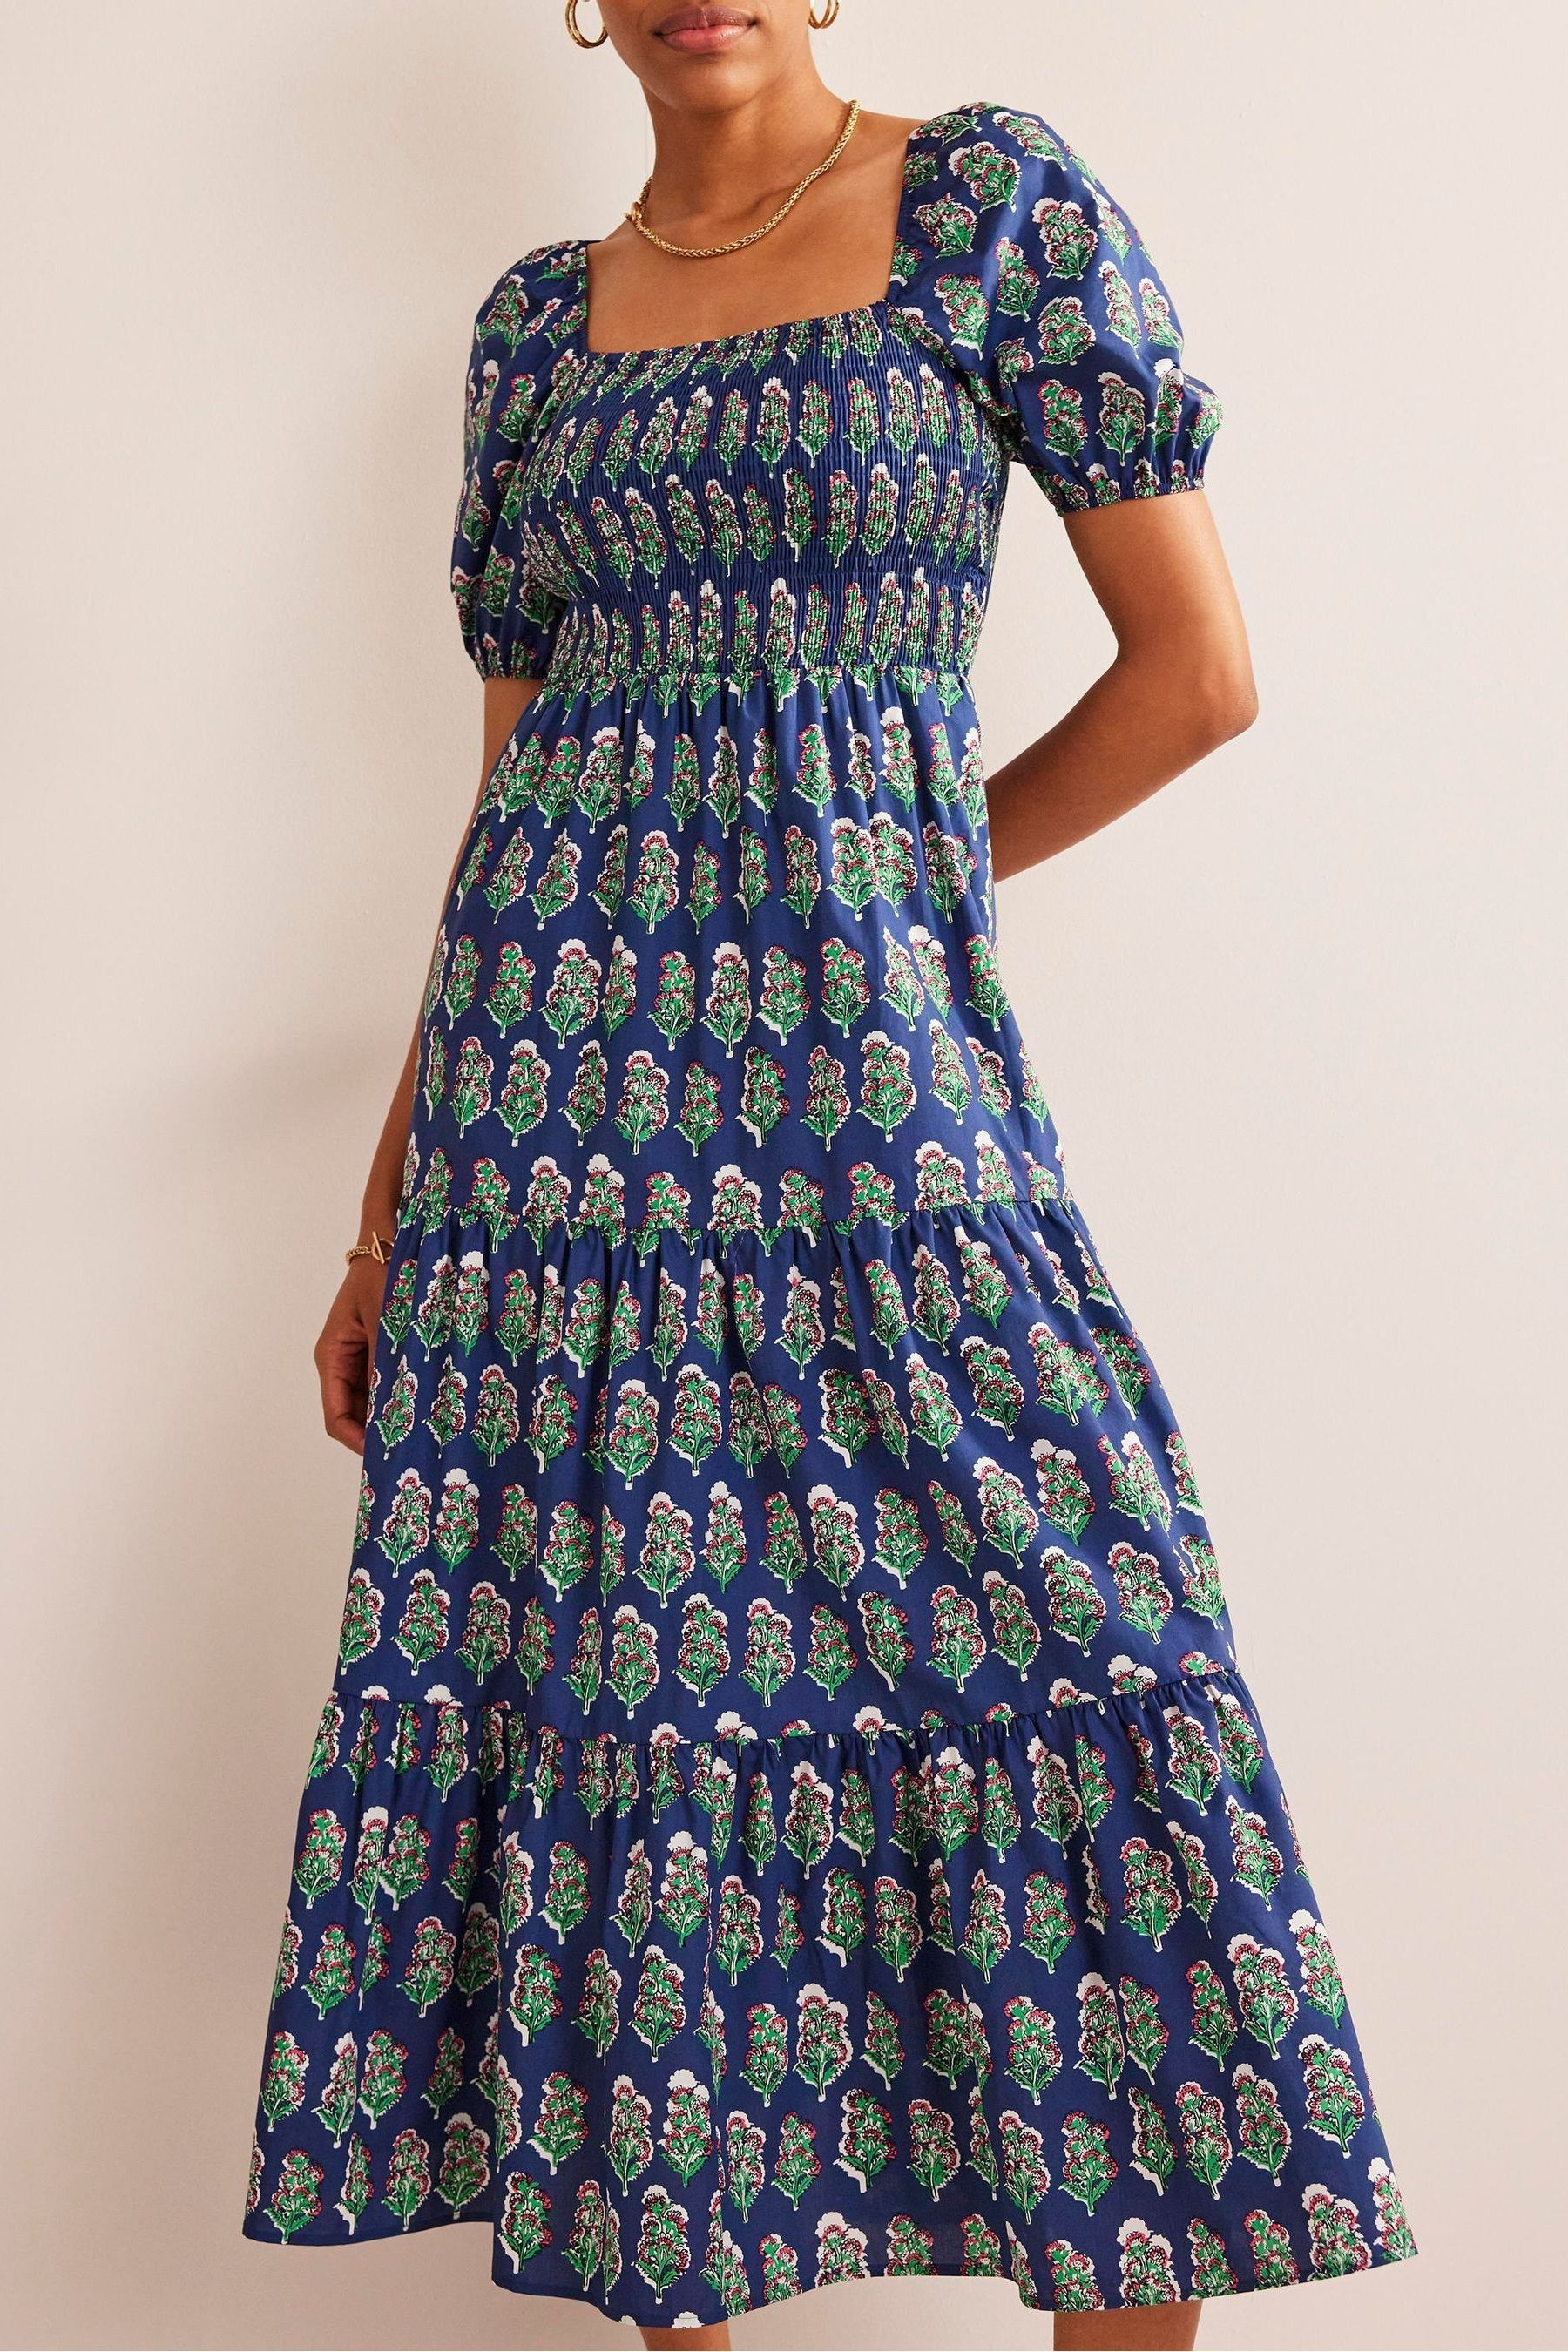 свободное синее платье с кружевом натали 10270 синий размер 54 Синее свободное платье с широкими рукавами Boden, синий